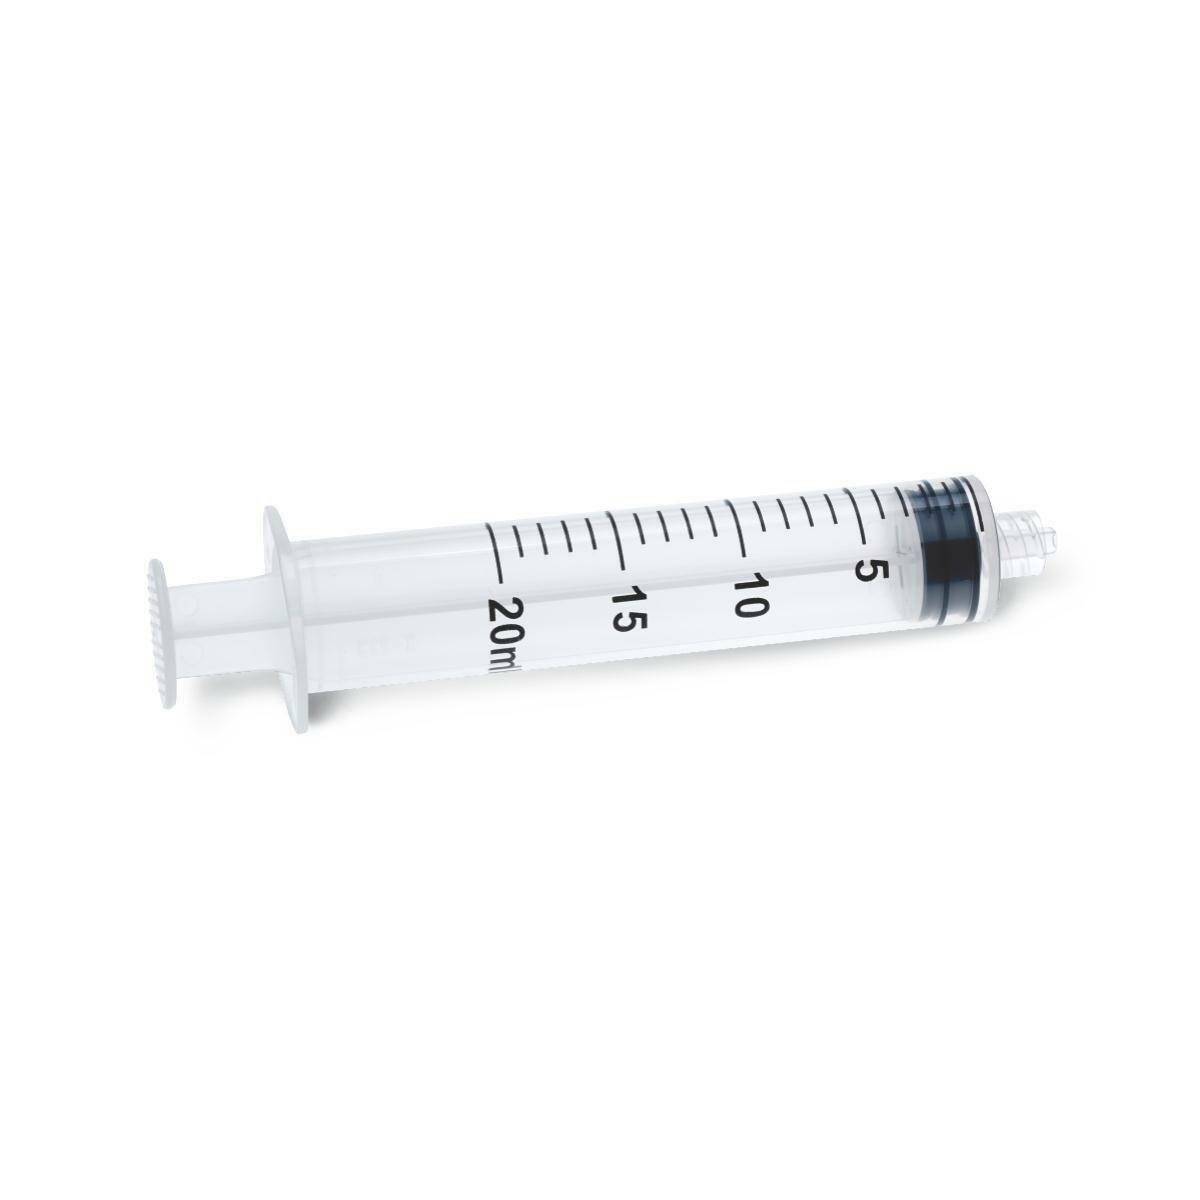 20ml Terumo Luer Lock Syringes - UKMEDI